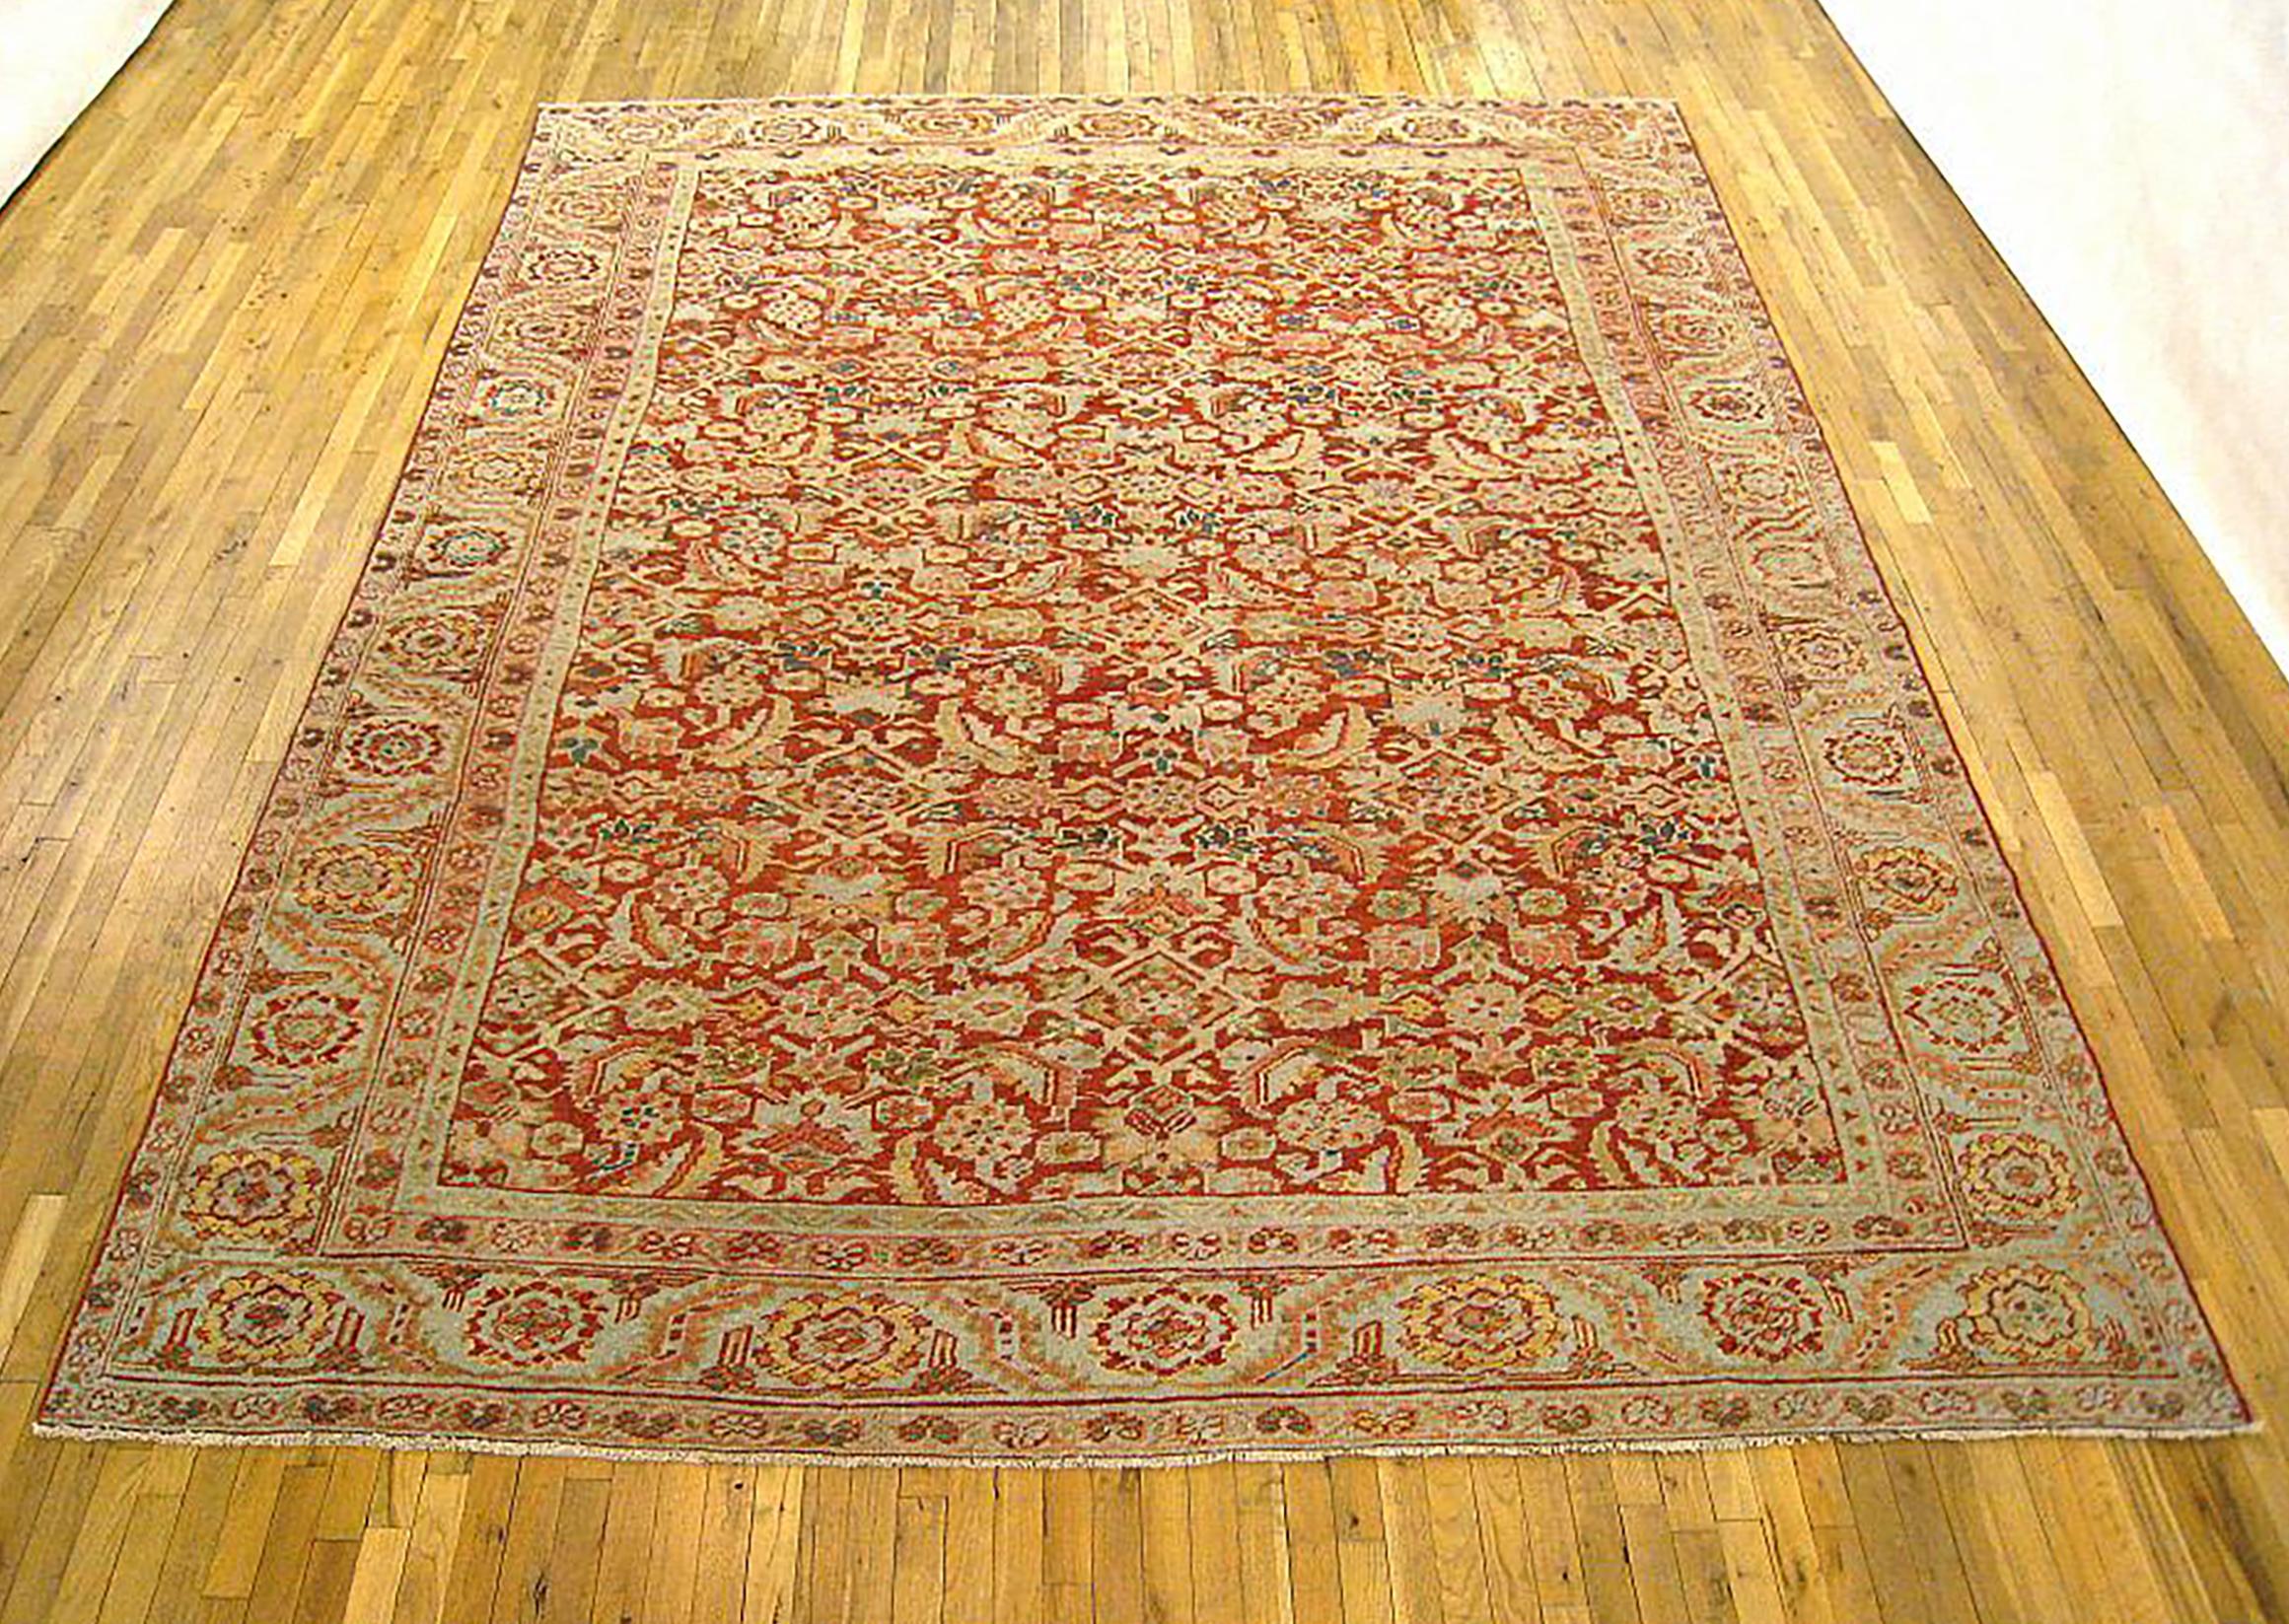 Antique Persian Heriz Oriental rug, Room size

An antique Persian Heriz oriental rug, size 12'6